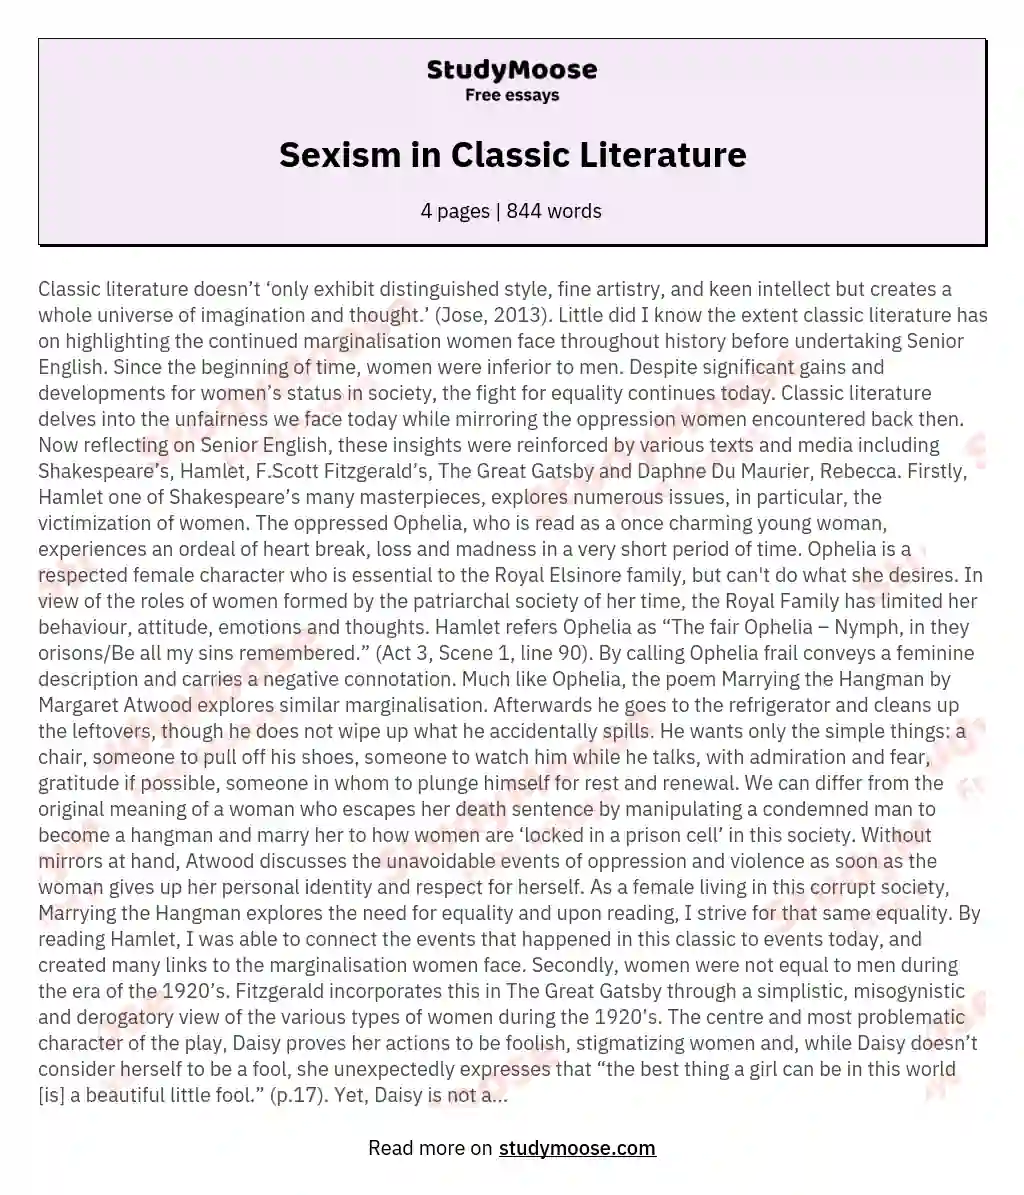 Sexism in Classic Literature essay